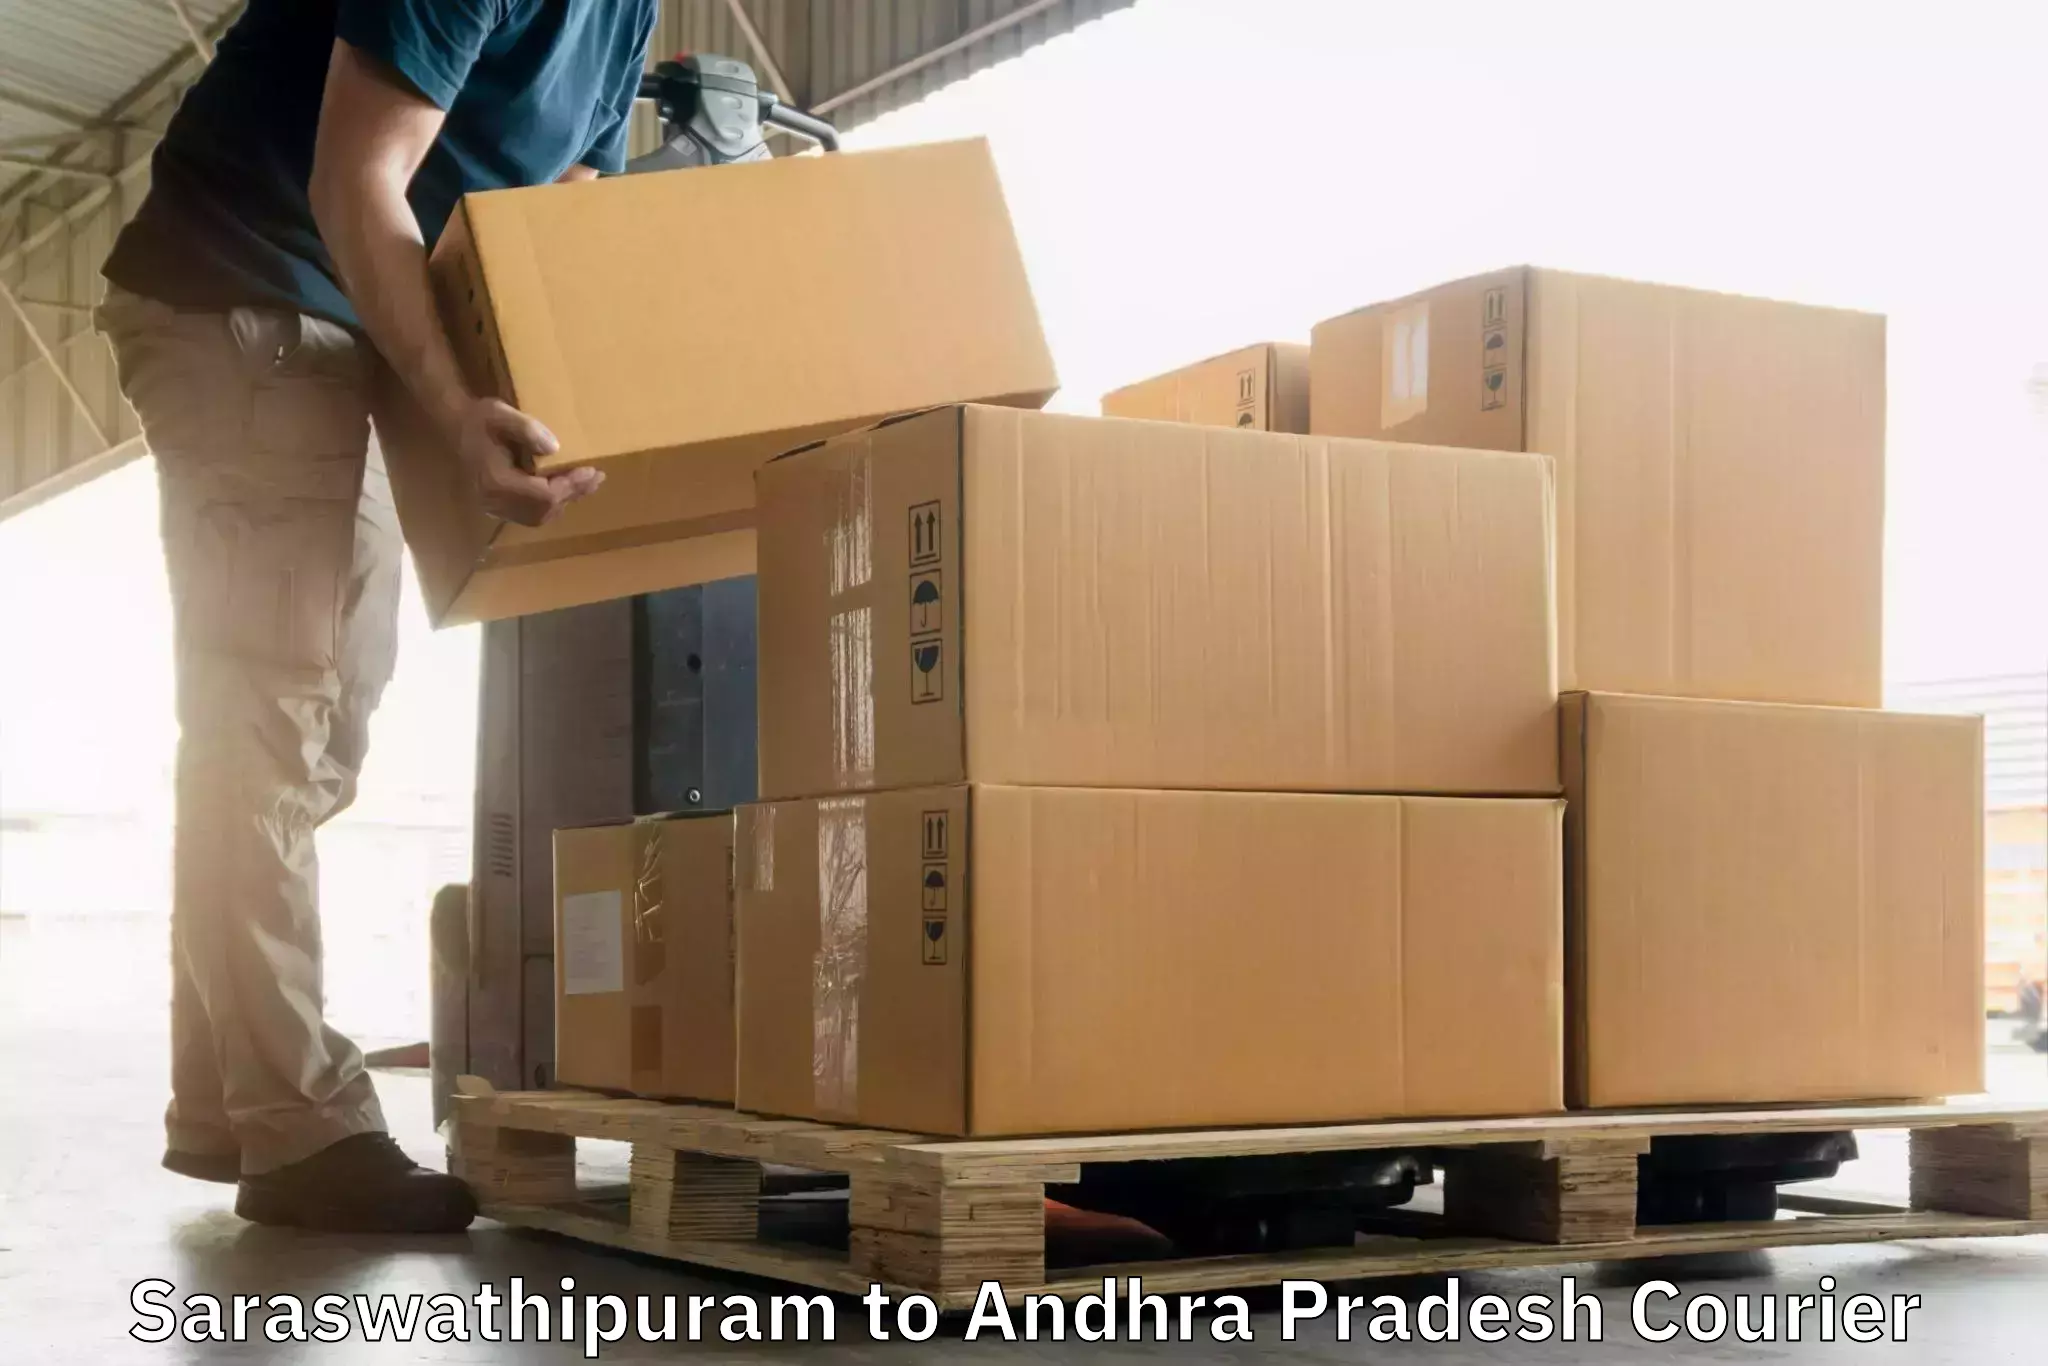 State-of-the-art courier technology Saraswathipuram to Tekkali